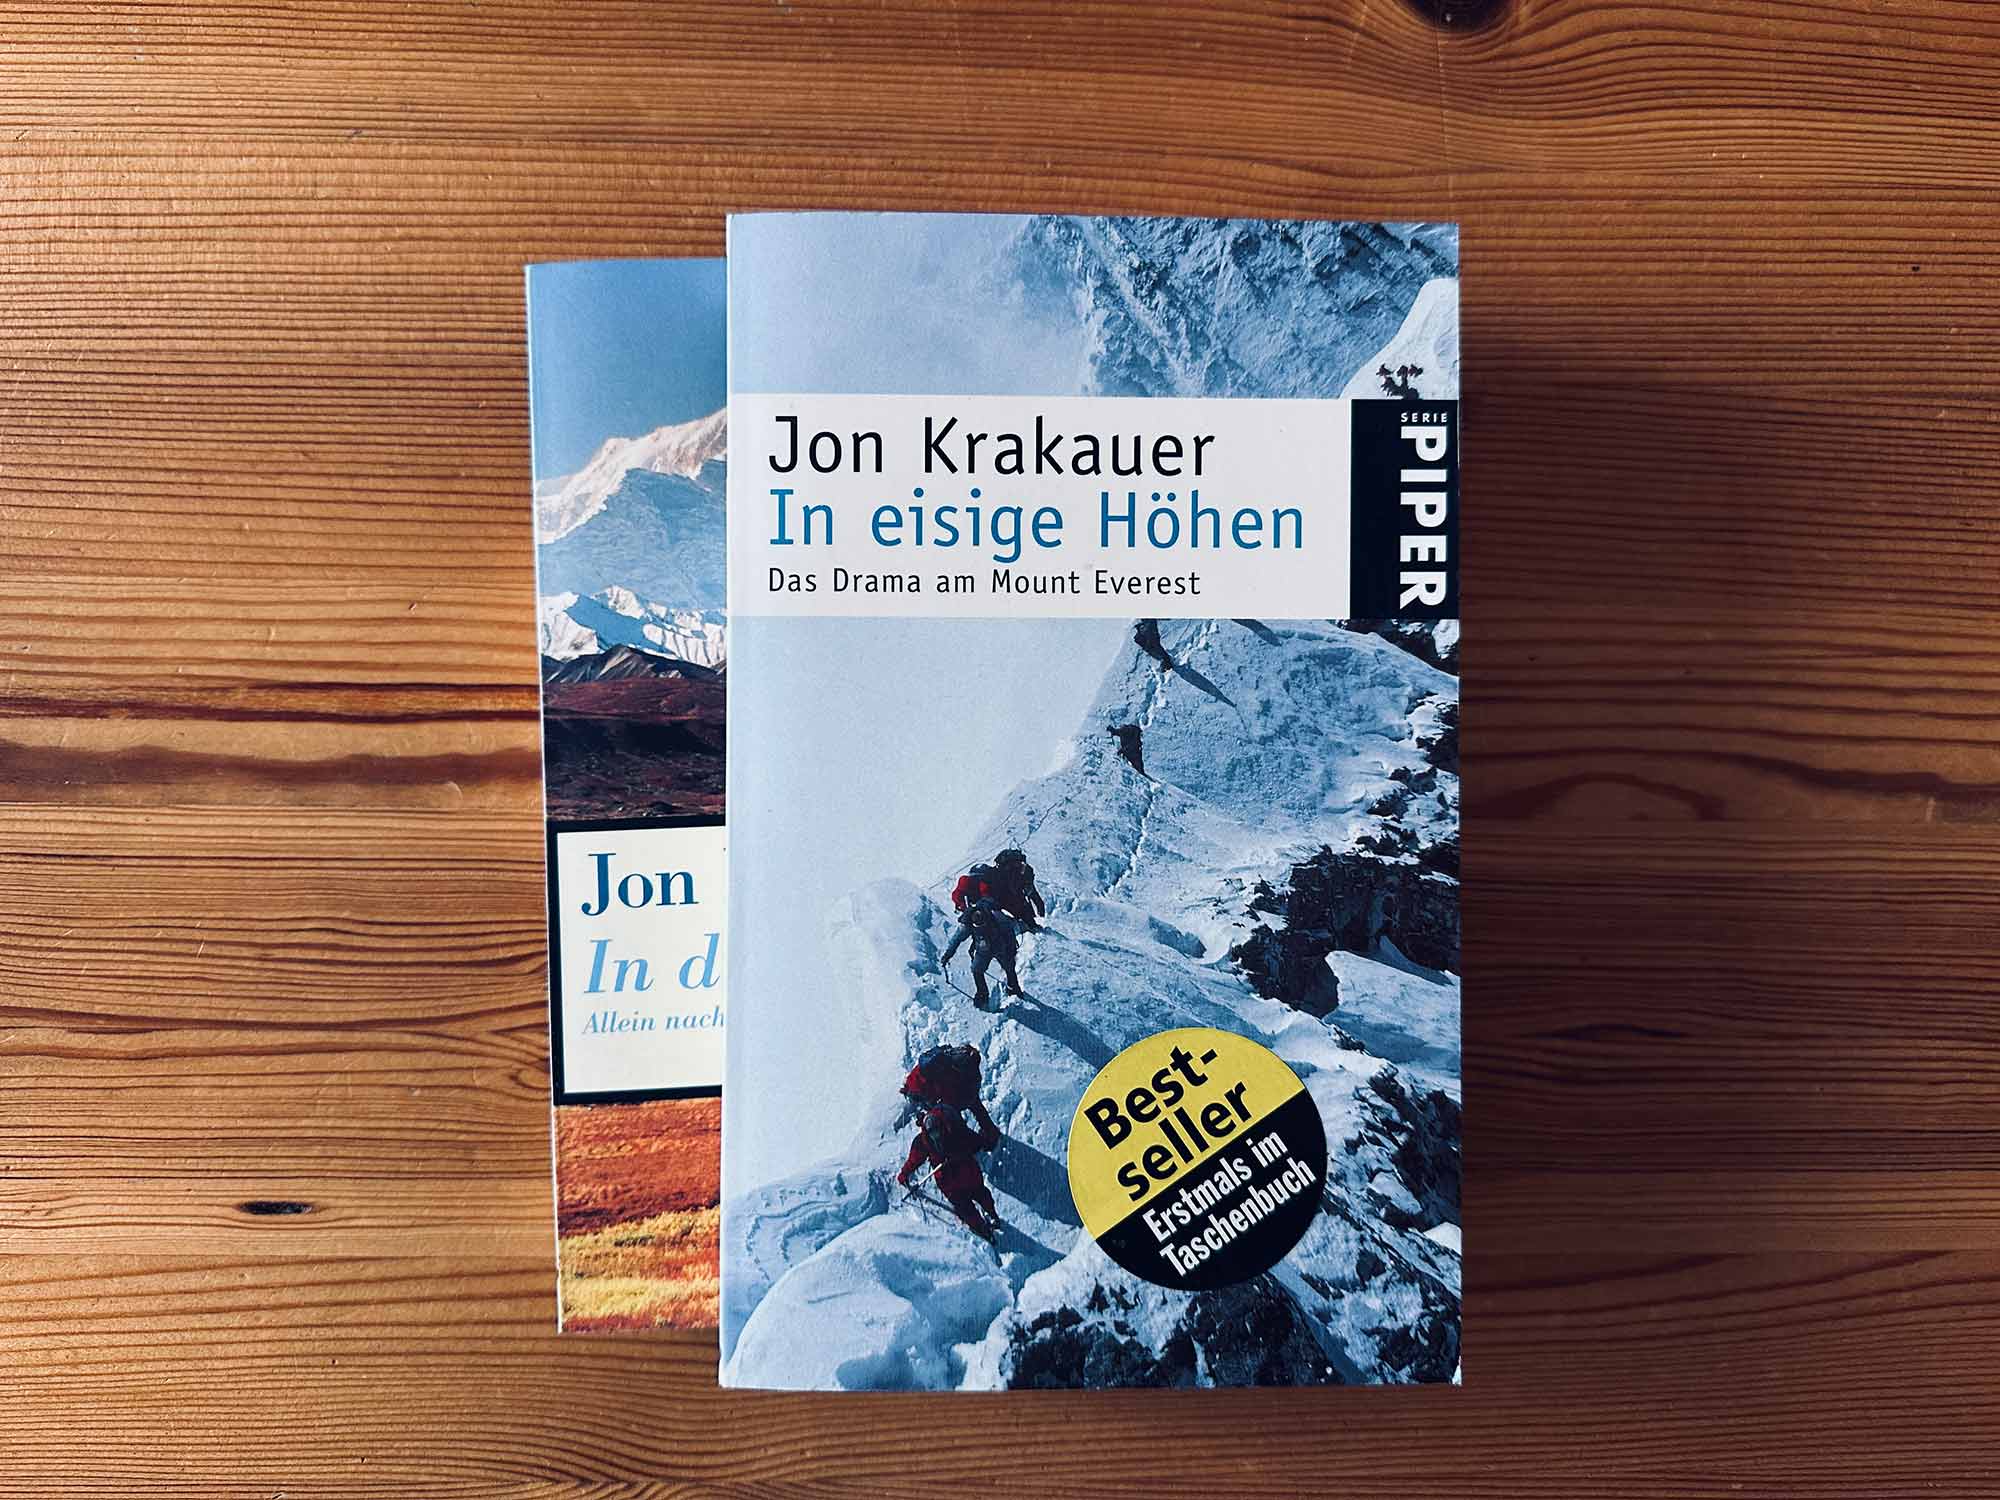 Im Bild ist das Buch mit dem Titel In eisige Höhen von Jon Krakauer über Rob Halls letzte Expedition zu sehen